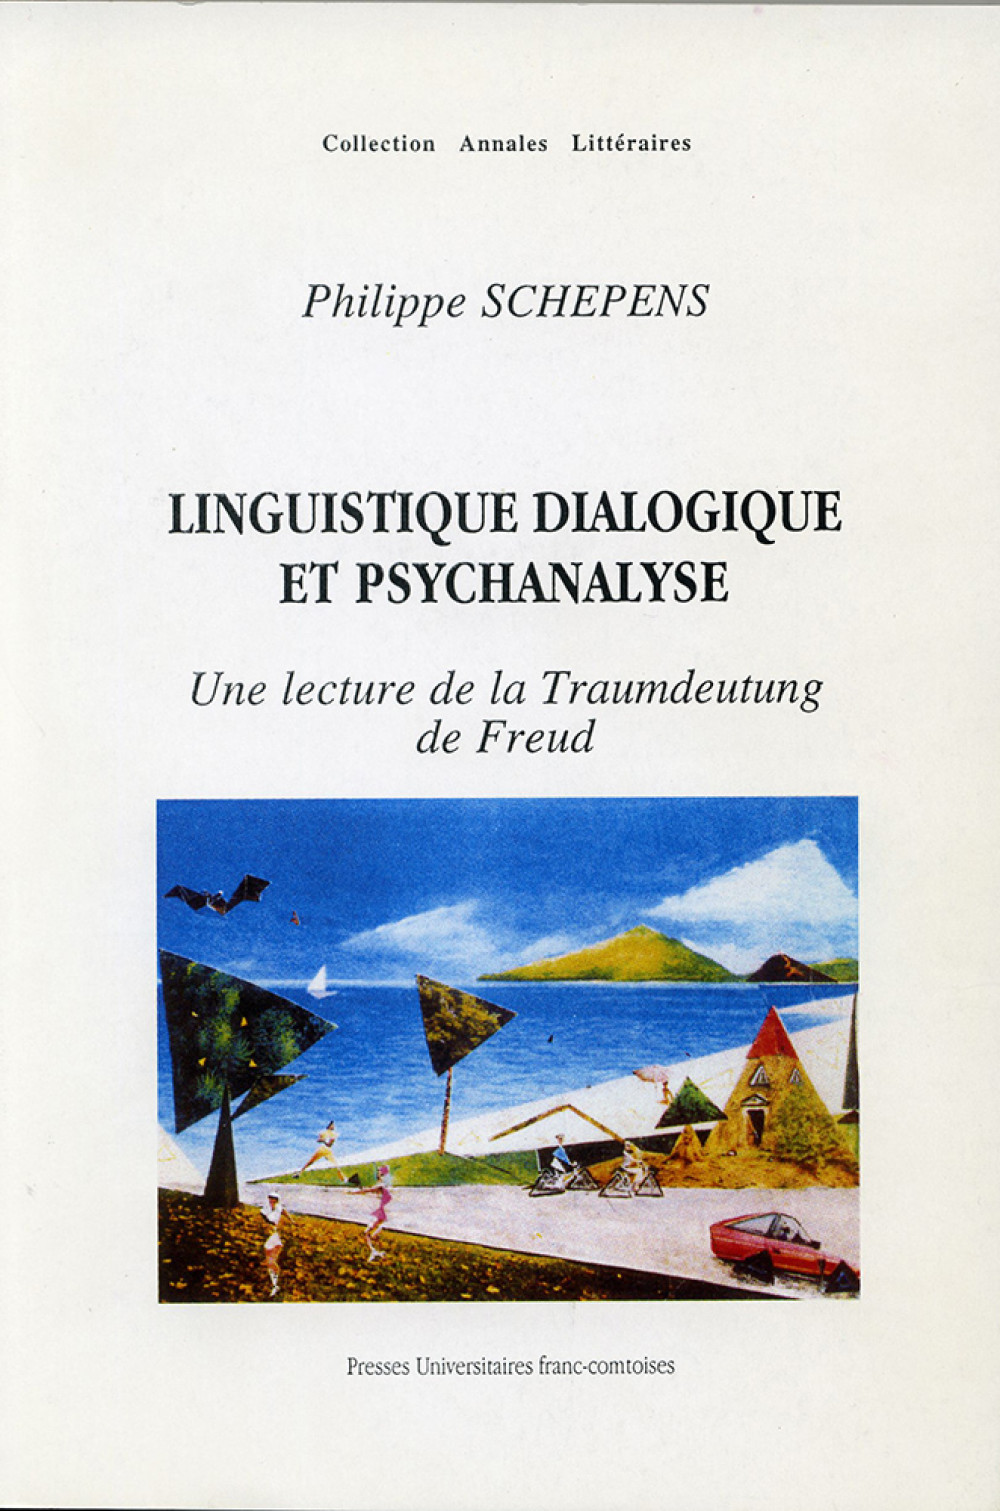 Linguistique dialogique et psychanalyse